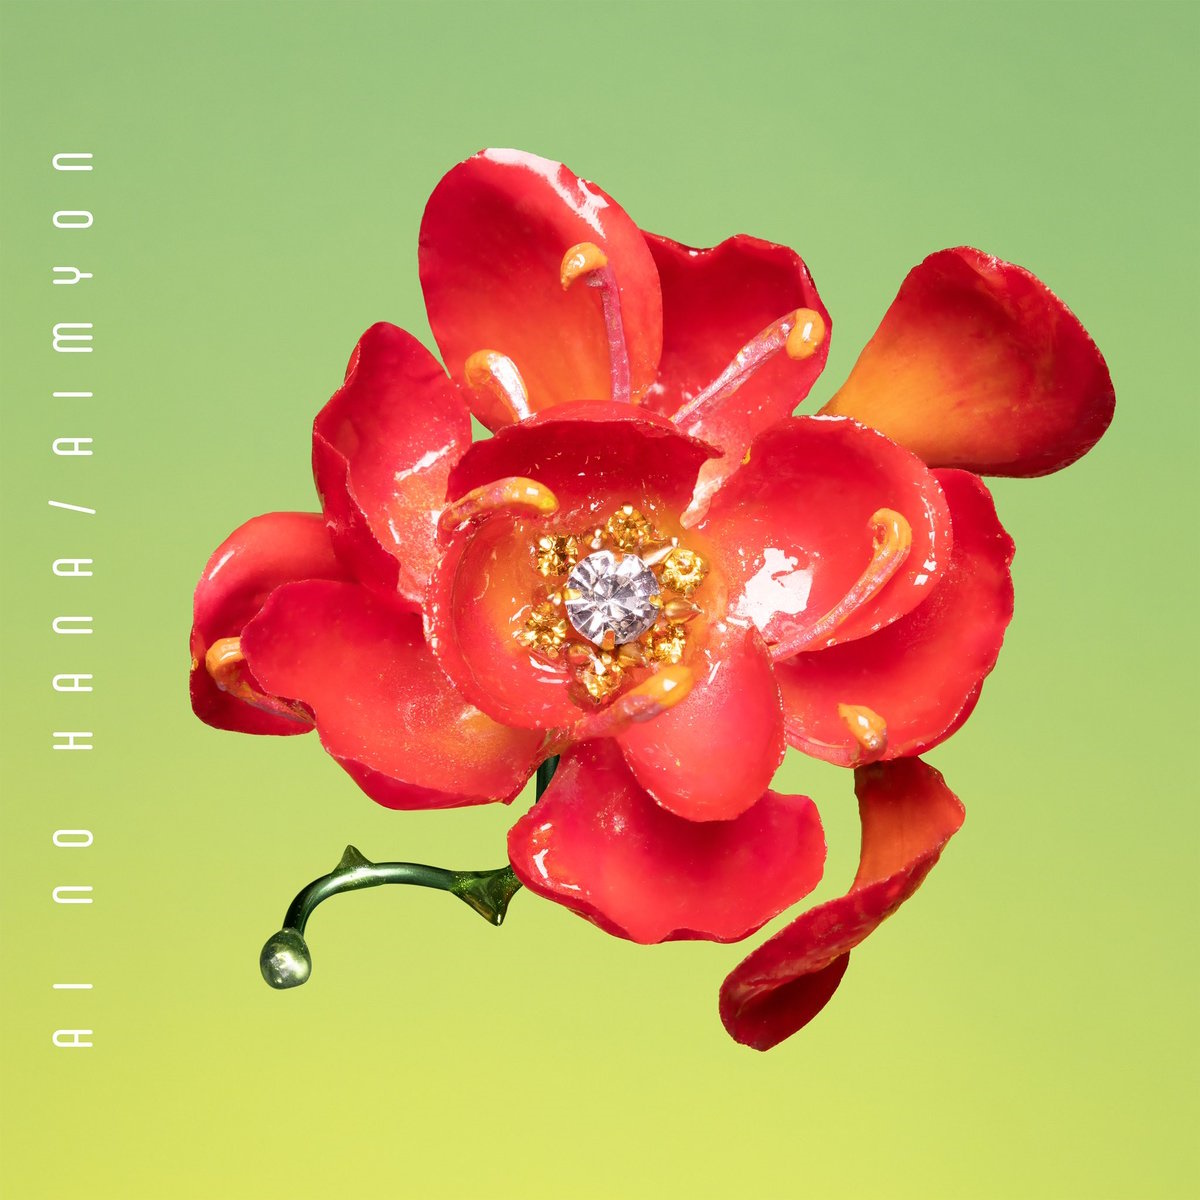 『あいみょん - 愛の花』収録の『愛の花』ジャケット